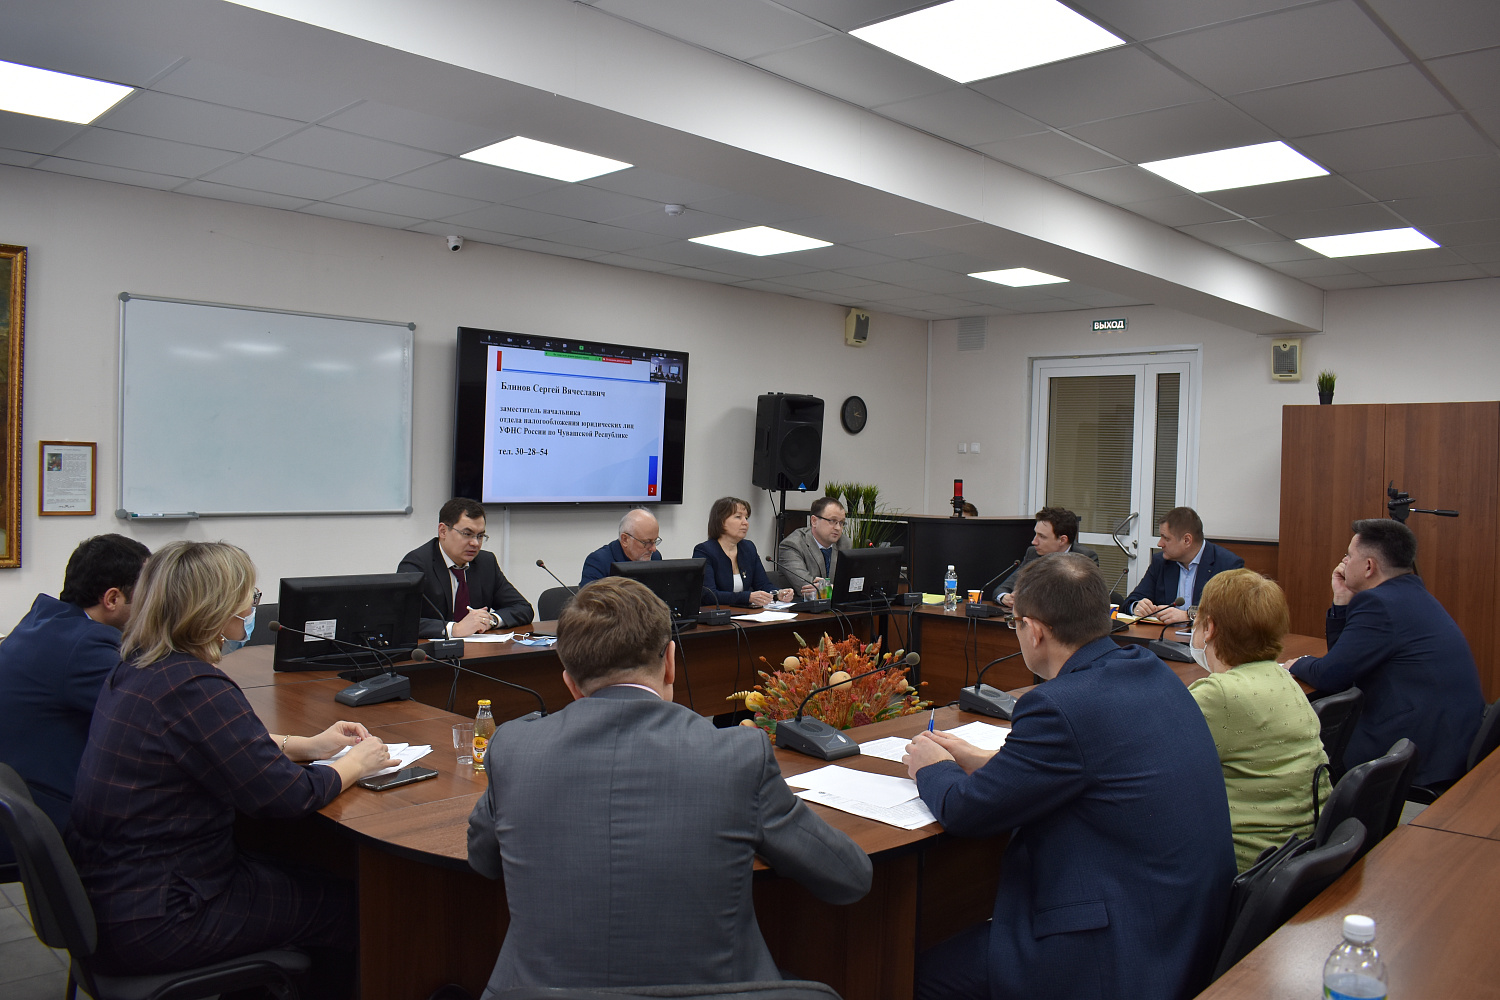 17 февраля 2022 г. в Торгово-промышленной палате Чувашской Республики состоялся Круглый стол совместно с Управлением Федеральной налоговой службы по Чувашской Республике.